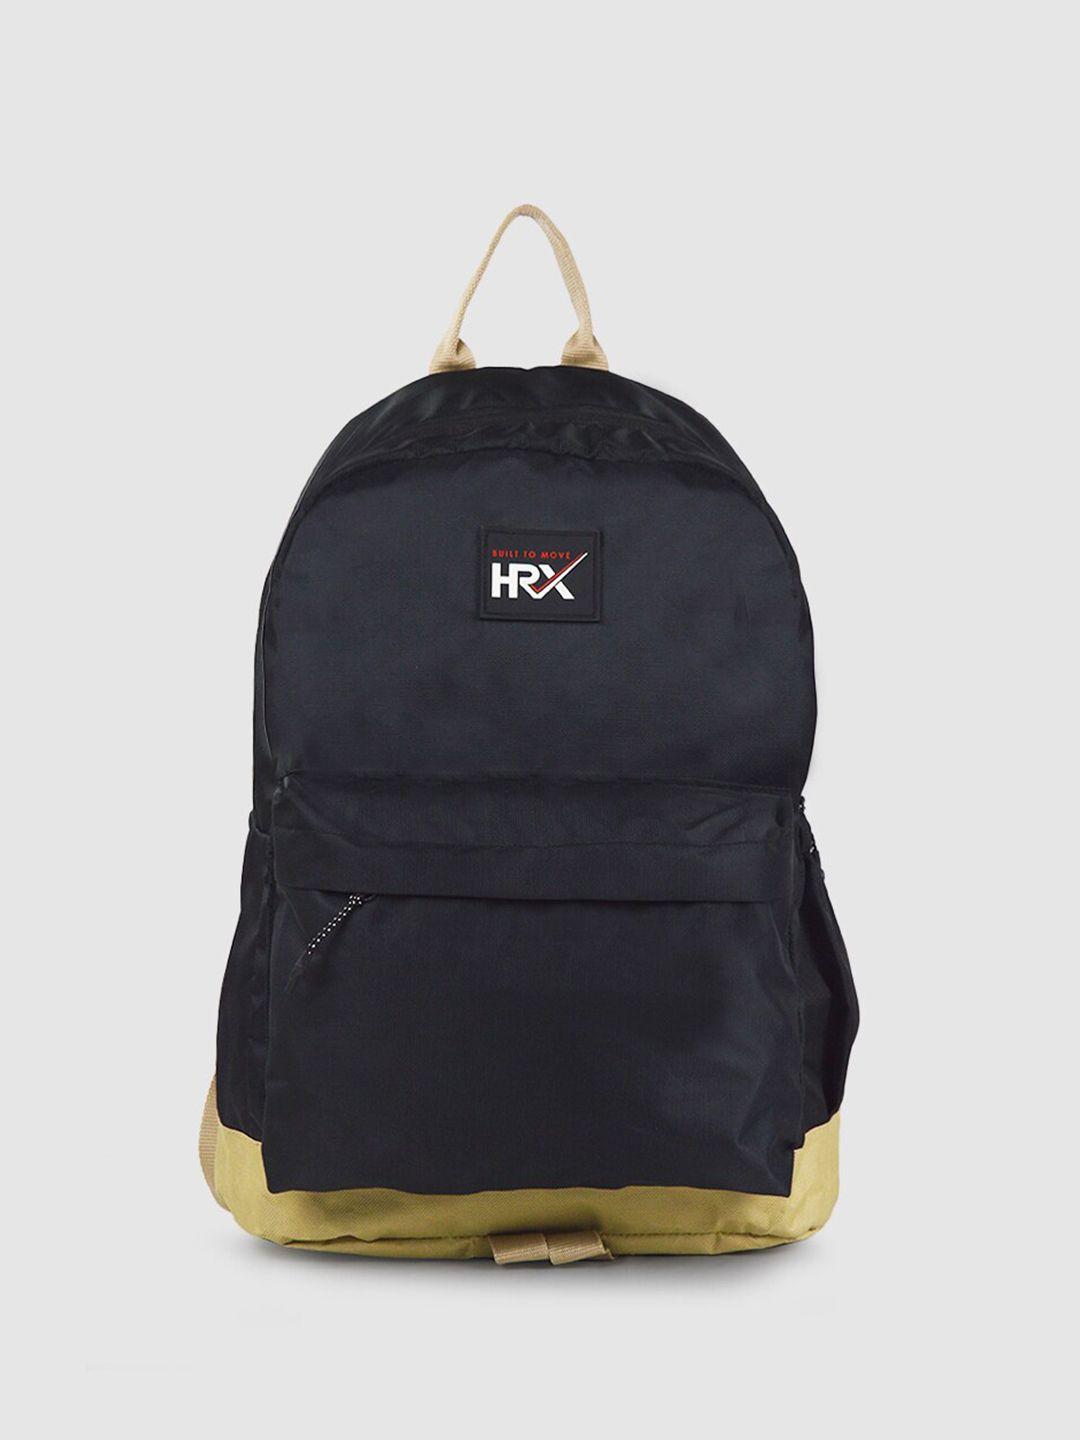 hrx by hrithik roshan unisex black backpack